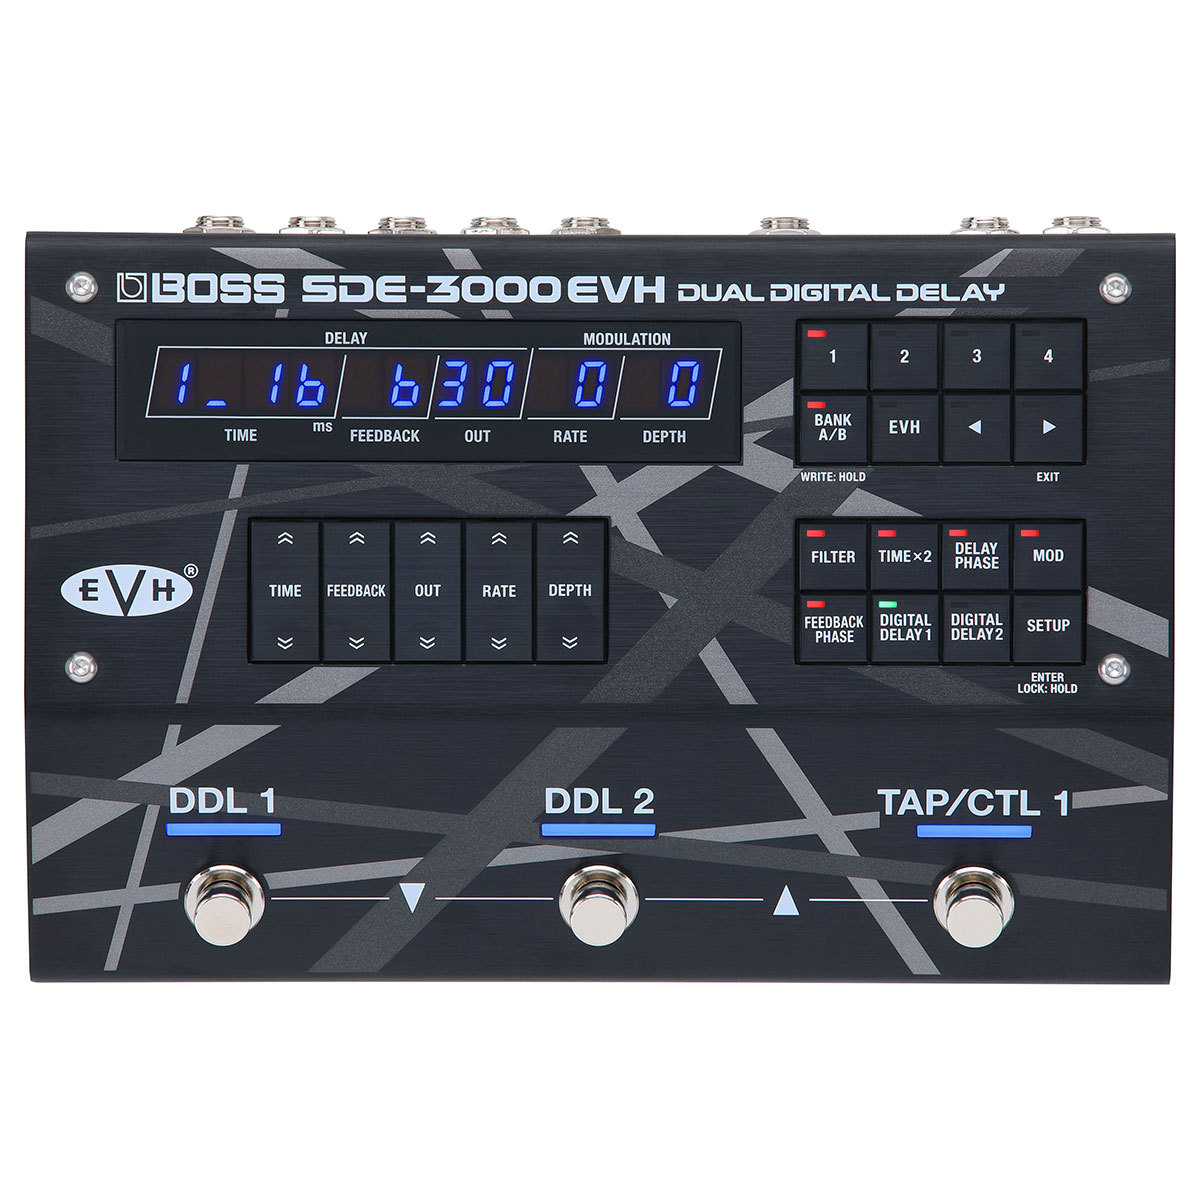 CONTENTSBOSS SDE-3000EVHこの商品について技術者による安心のアフターフォローアドバイザーが楽器選びをサポート最新情報を手に入れよう音楽をもっと楽しみたい方は音楽教室がおススメ♪お問い合わせBOSS SDE-3000EVH Eddie Van Halen の代表的なステレオ・ディ […]